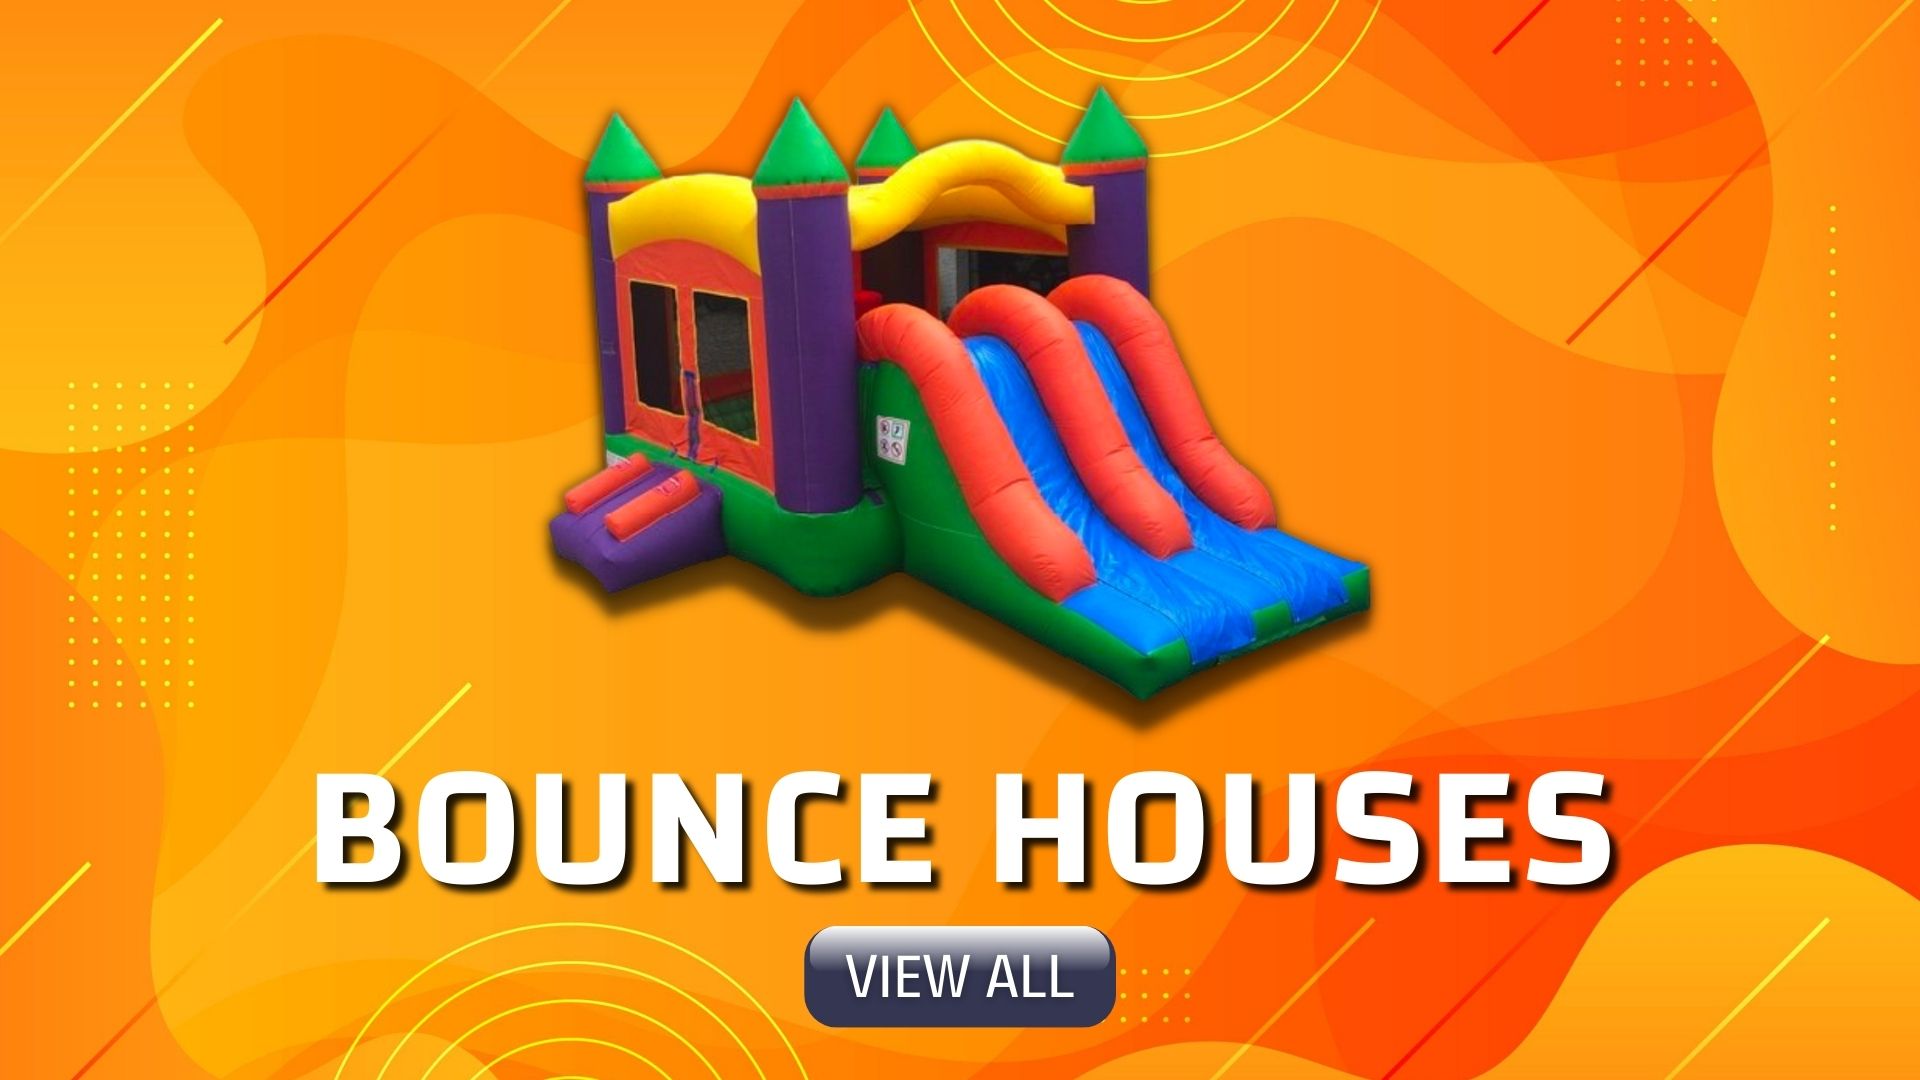 Bridgeport bounce house rentals